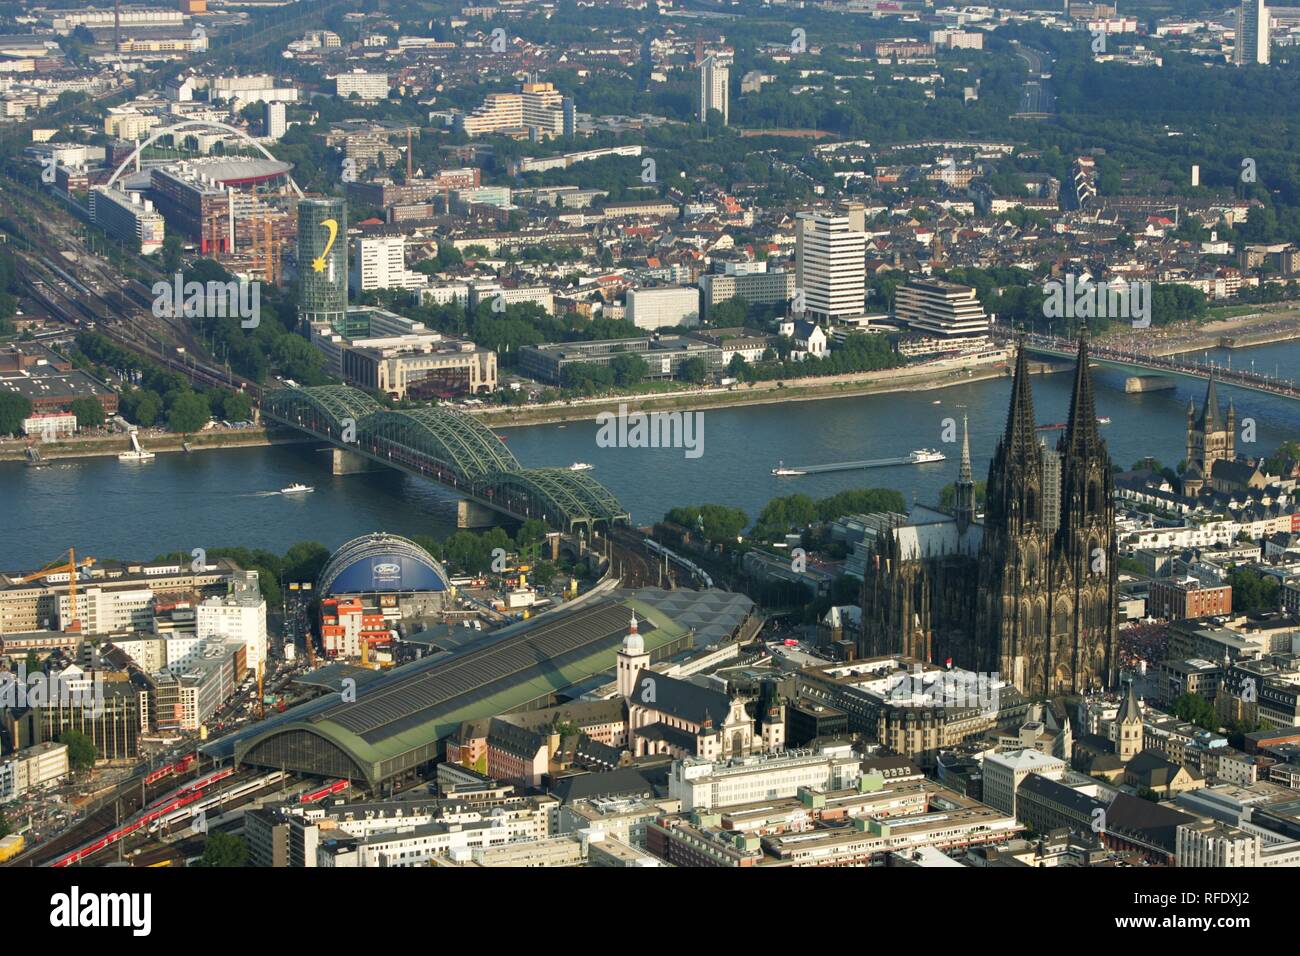 DEU, Deutschland, Köln: Areal Blick auf das Stadtzentrum. Kathedrale. Hauptbahnhof. Rhein. | Stockfoto